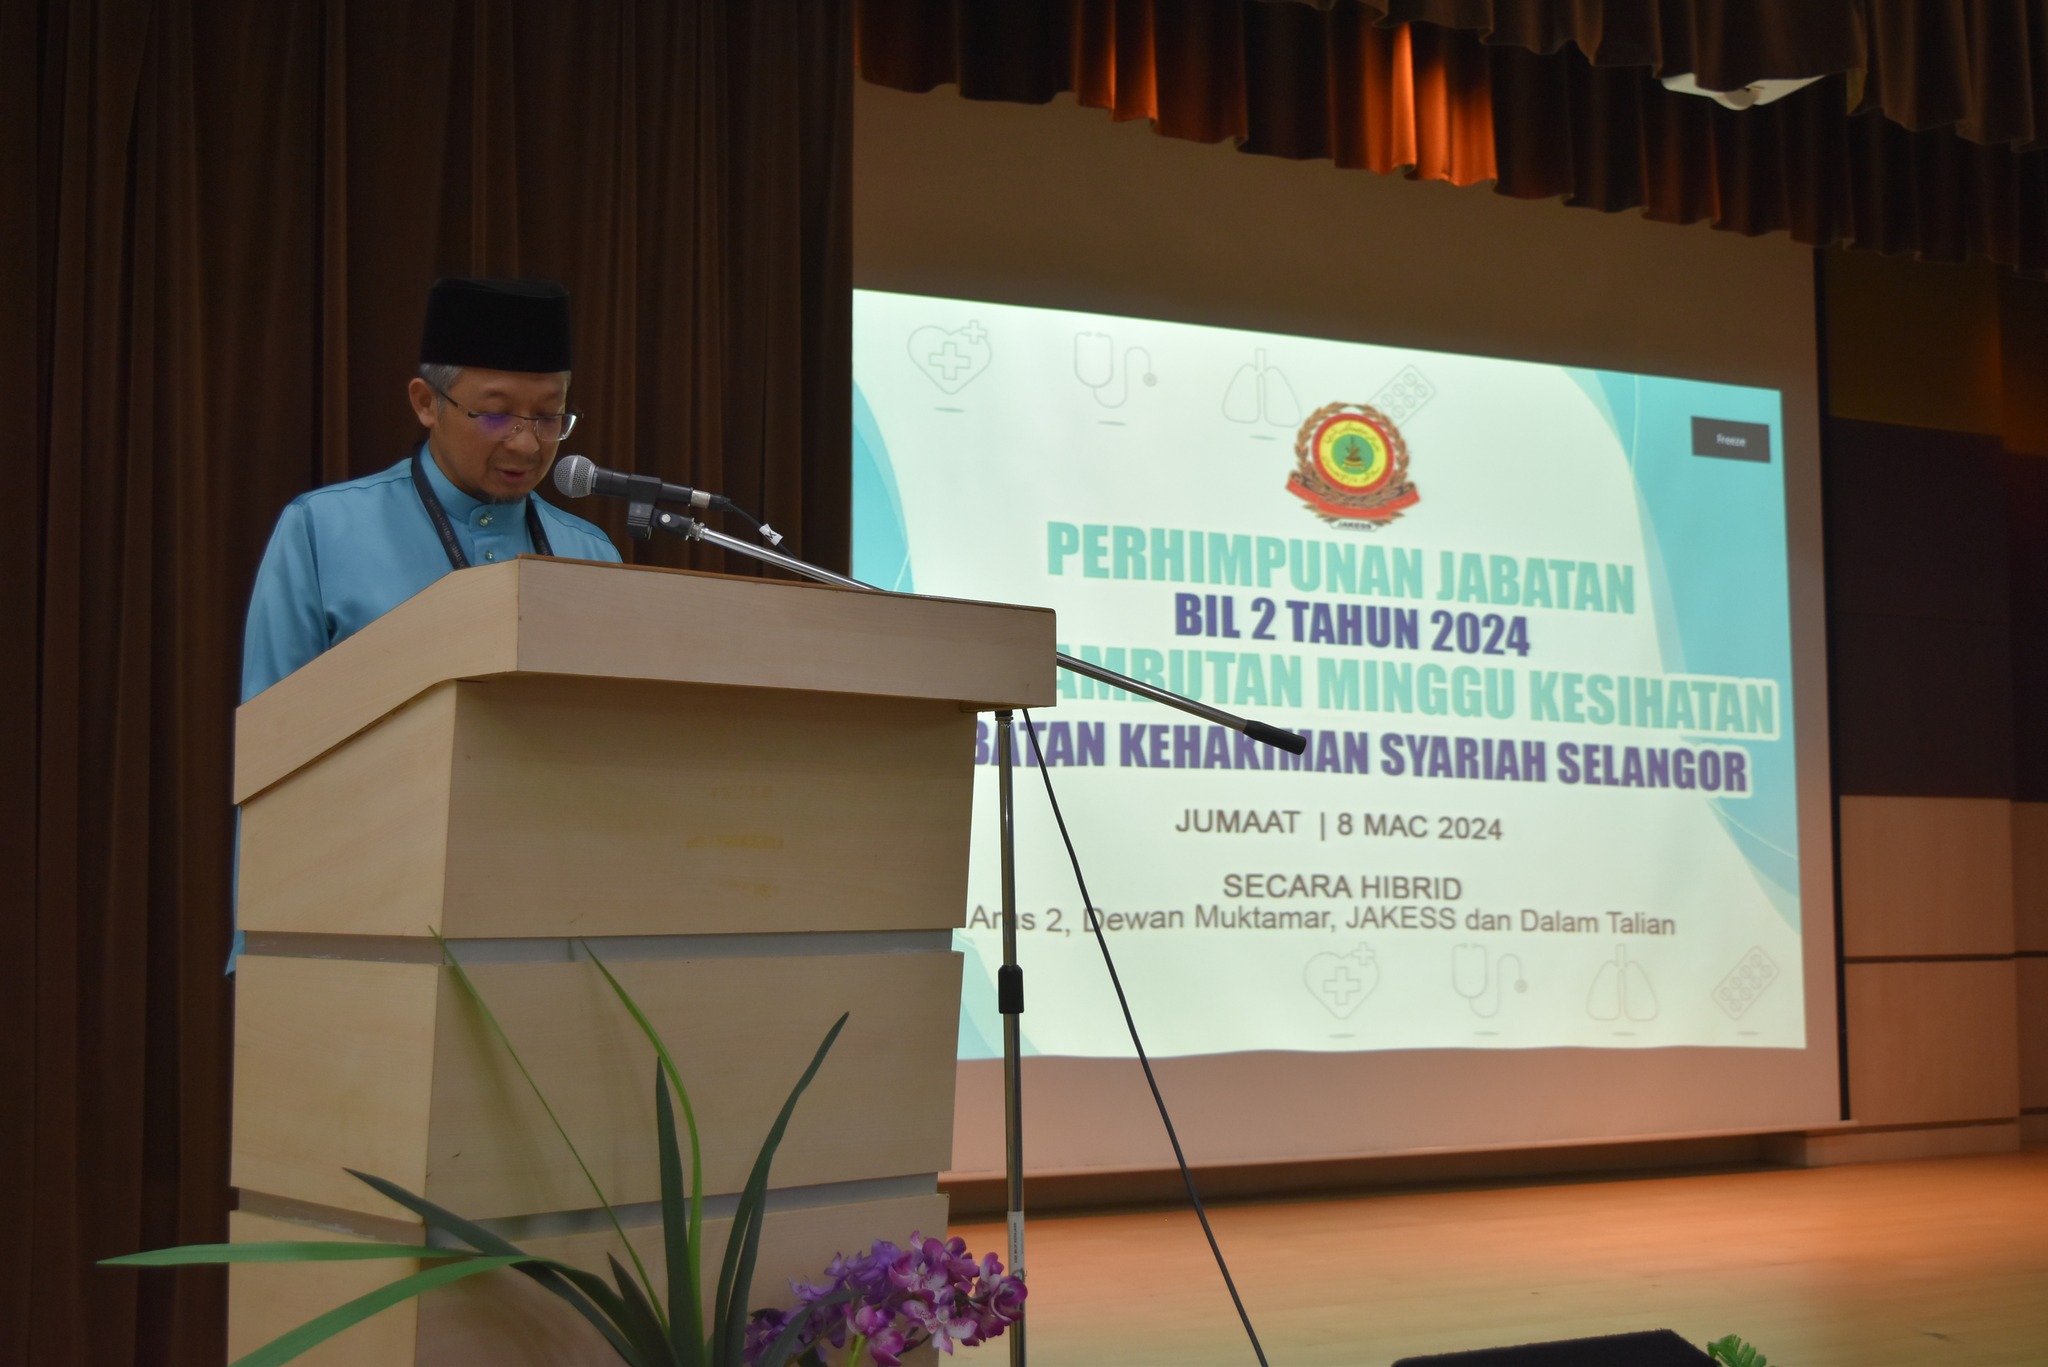 Perhimpunan Jabatan Bilangan 2 Tahun 2024 Sambutan Minggu Kesihatan Jabatan Kehakiman Syariah Selangor 4